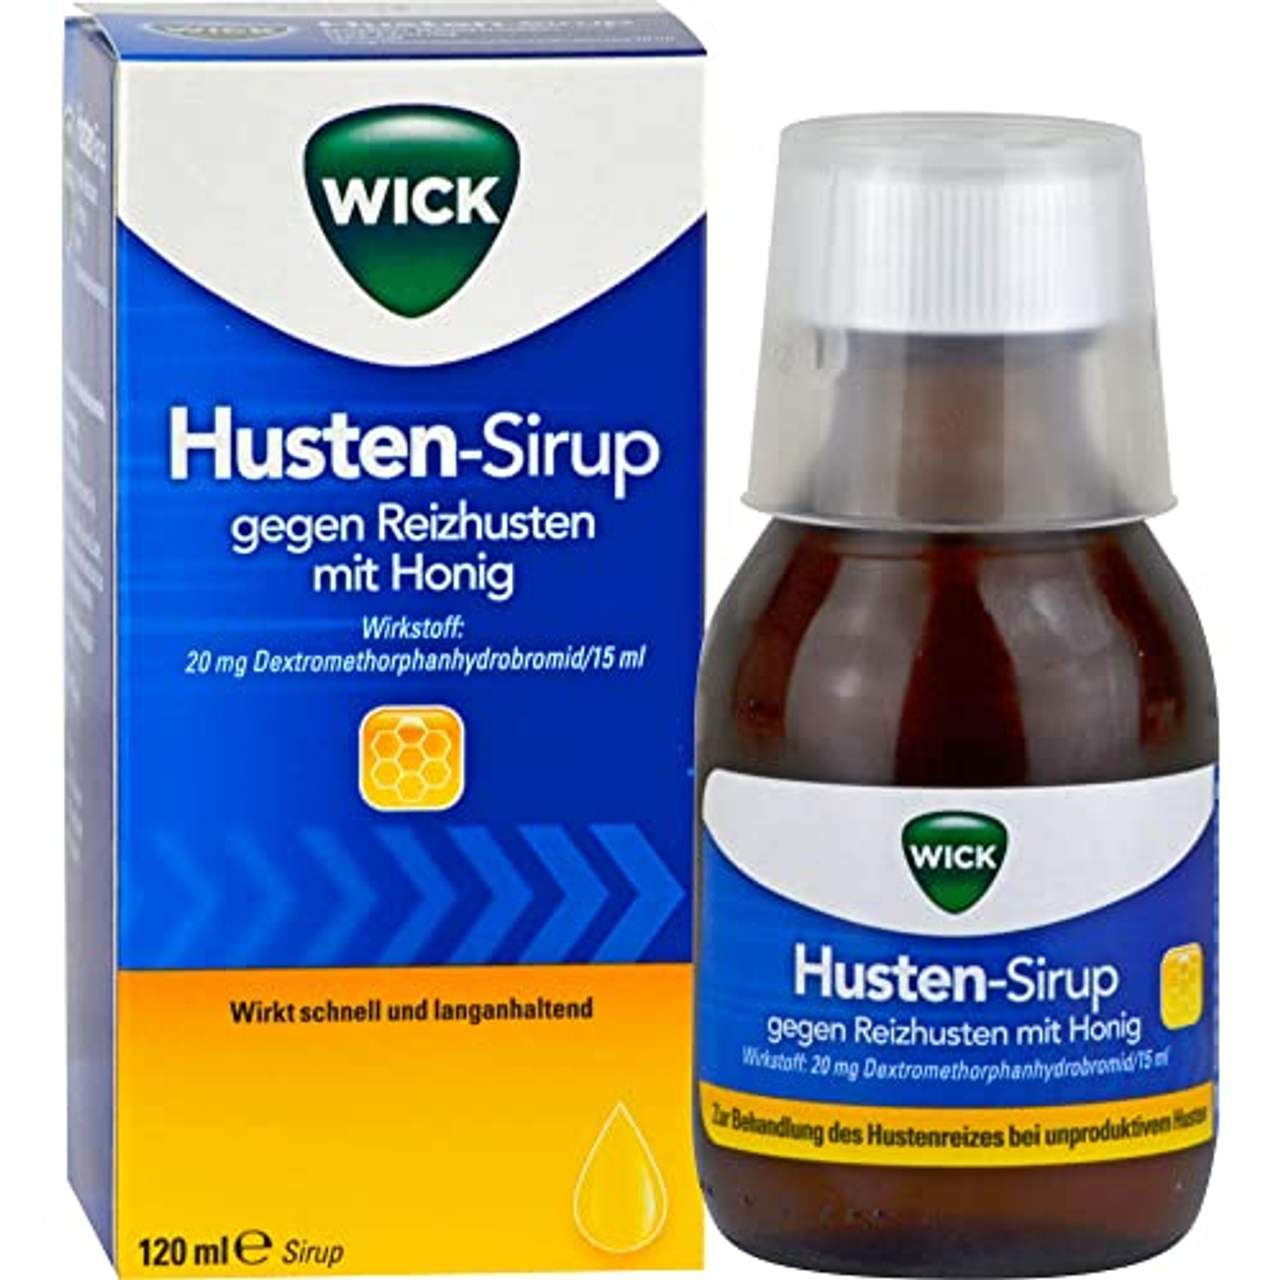 Wick Husten-Sirup gegen Reizhusten